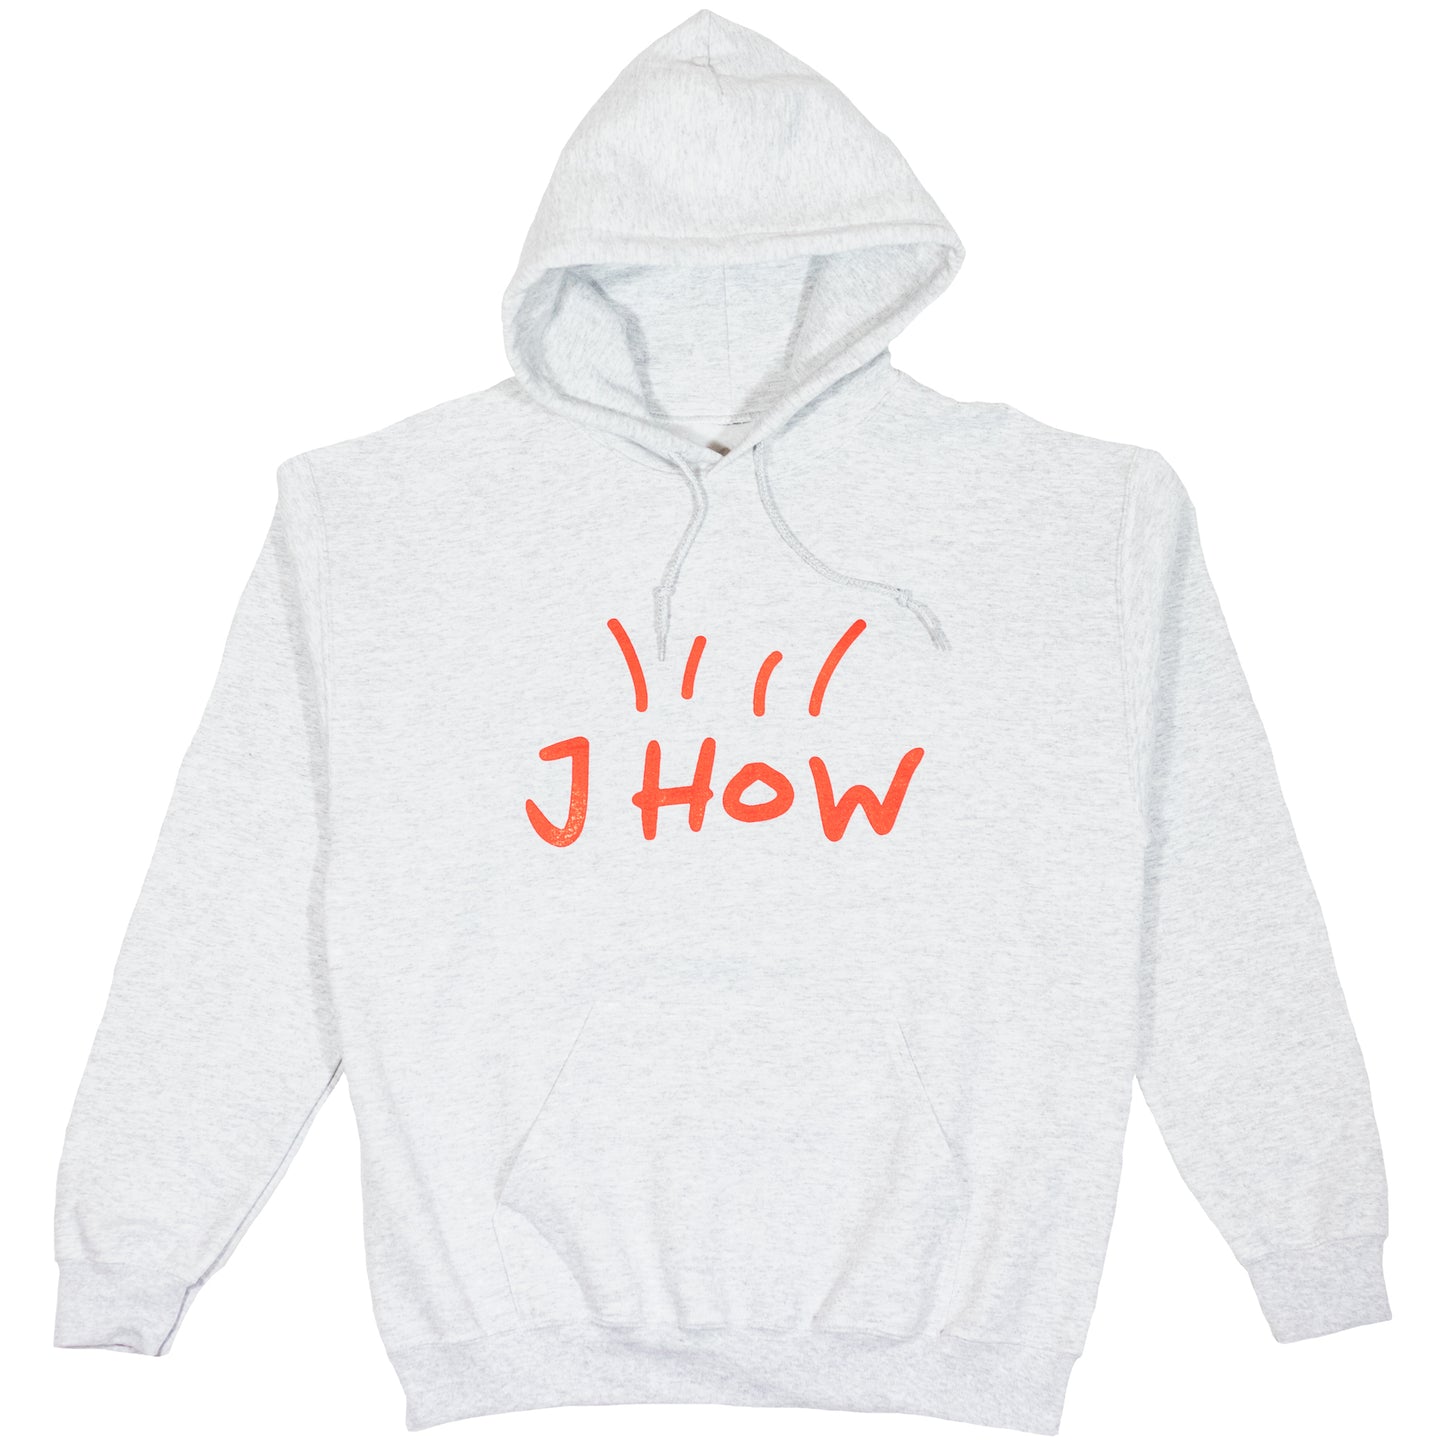 J How Hoodie - Ash